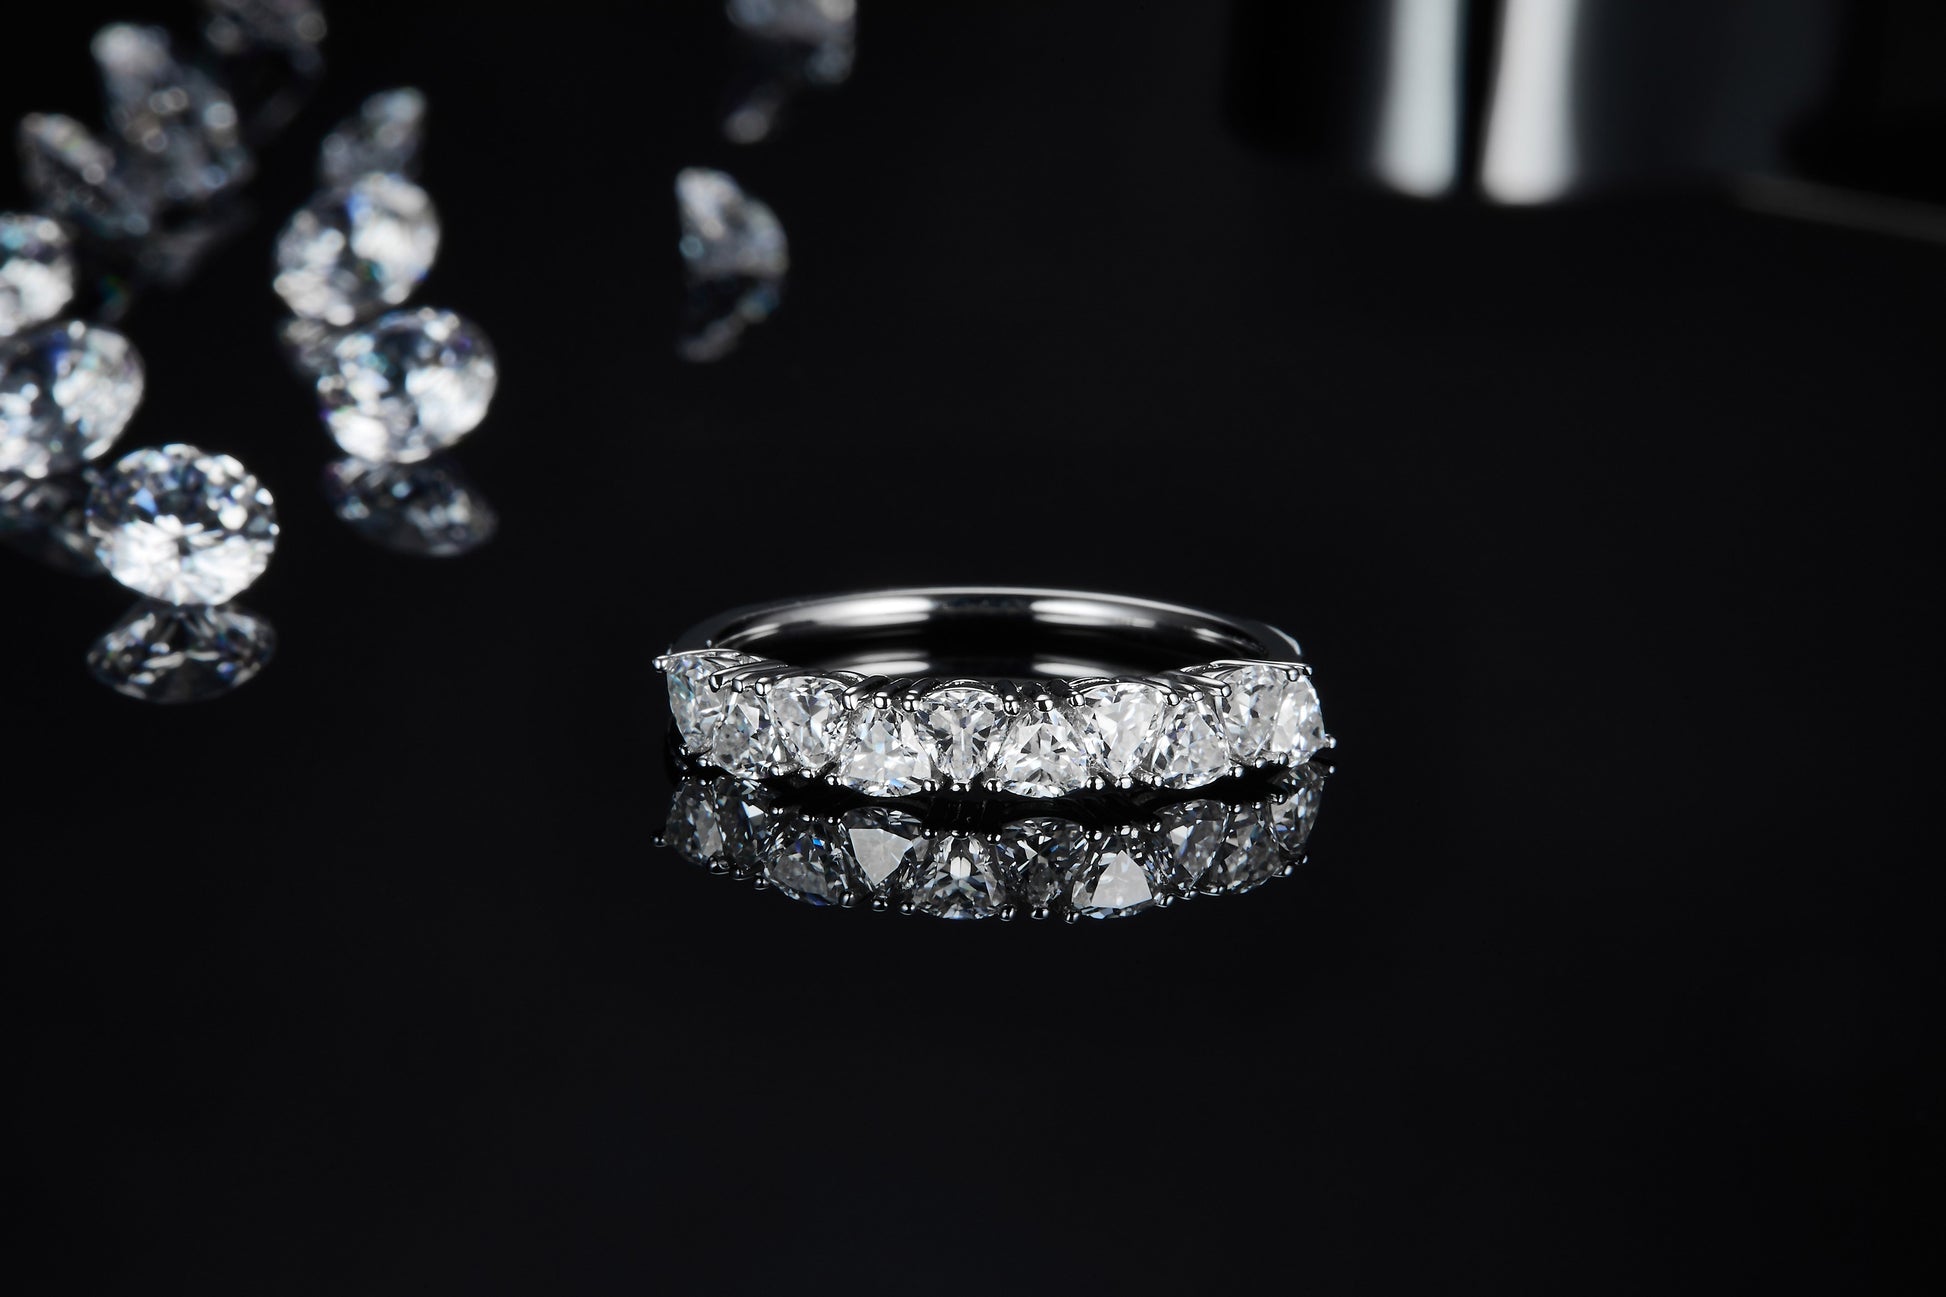 A silver trillion cut half eternity wedding ring.